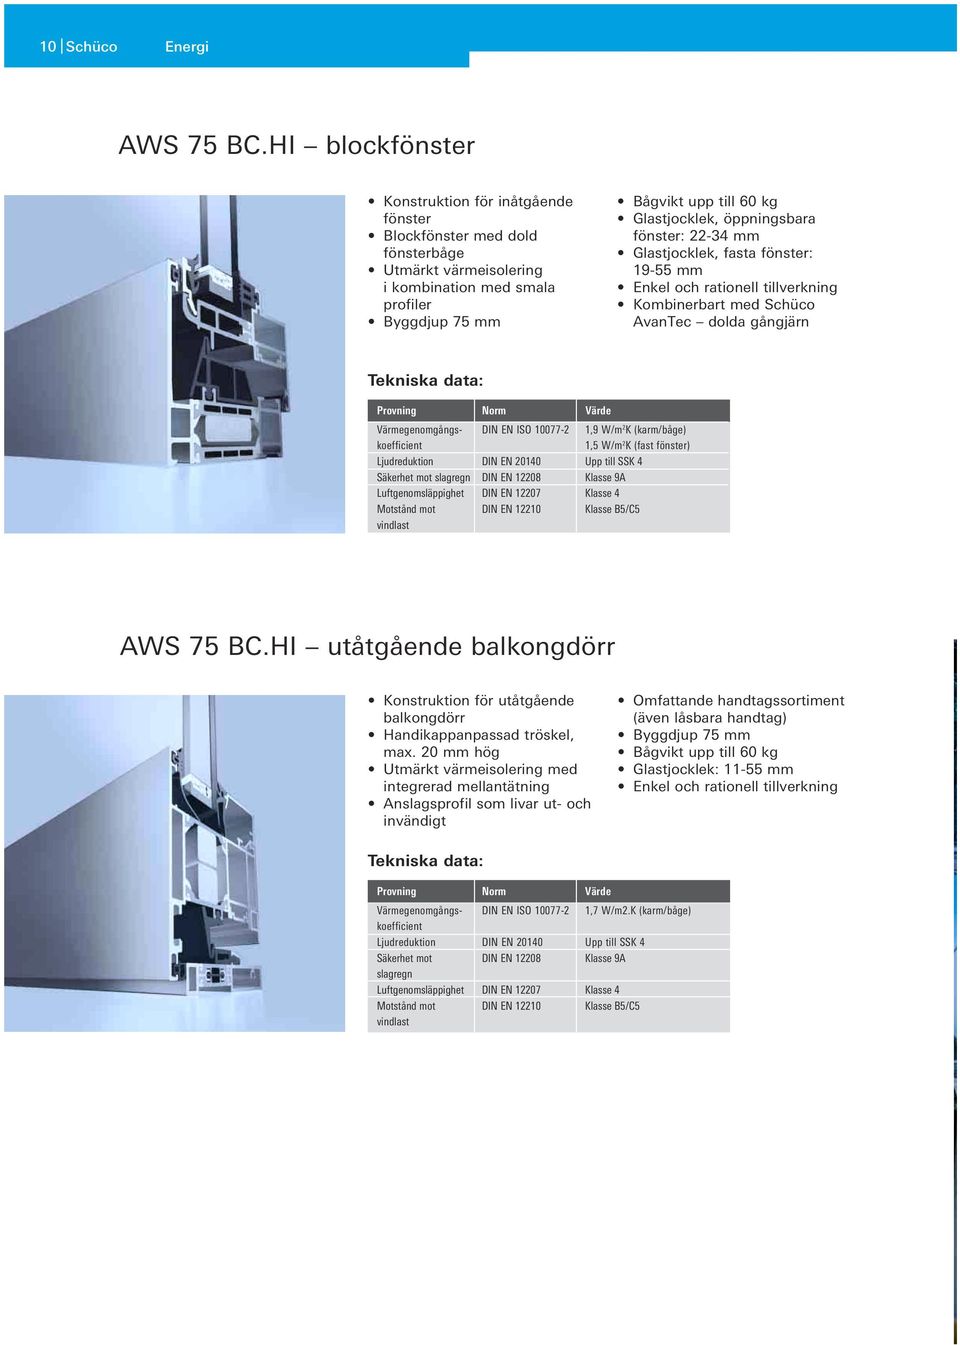 öppningsbara fönster: 22-34 mm Glastjocklek, fasta fönster: 19-55 mm Enkel och rationell tillverkning Kombinerbart med Schüco AvanTec dolda gångjärn Tekniska data: Provning Norm Värde